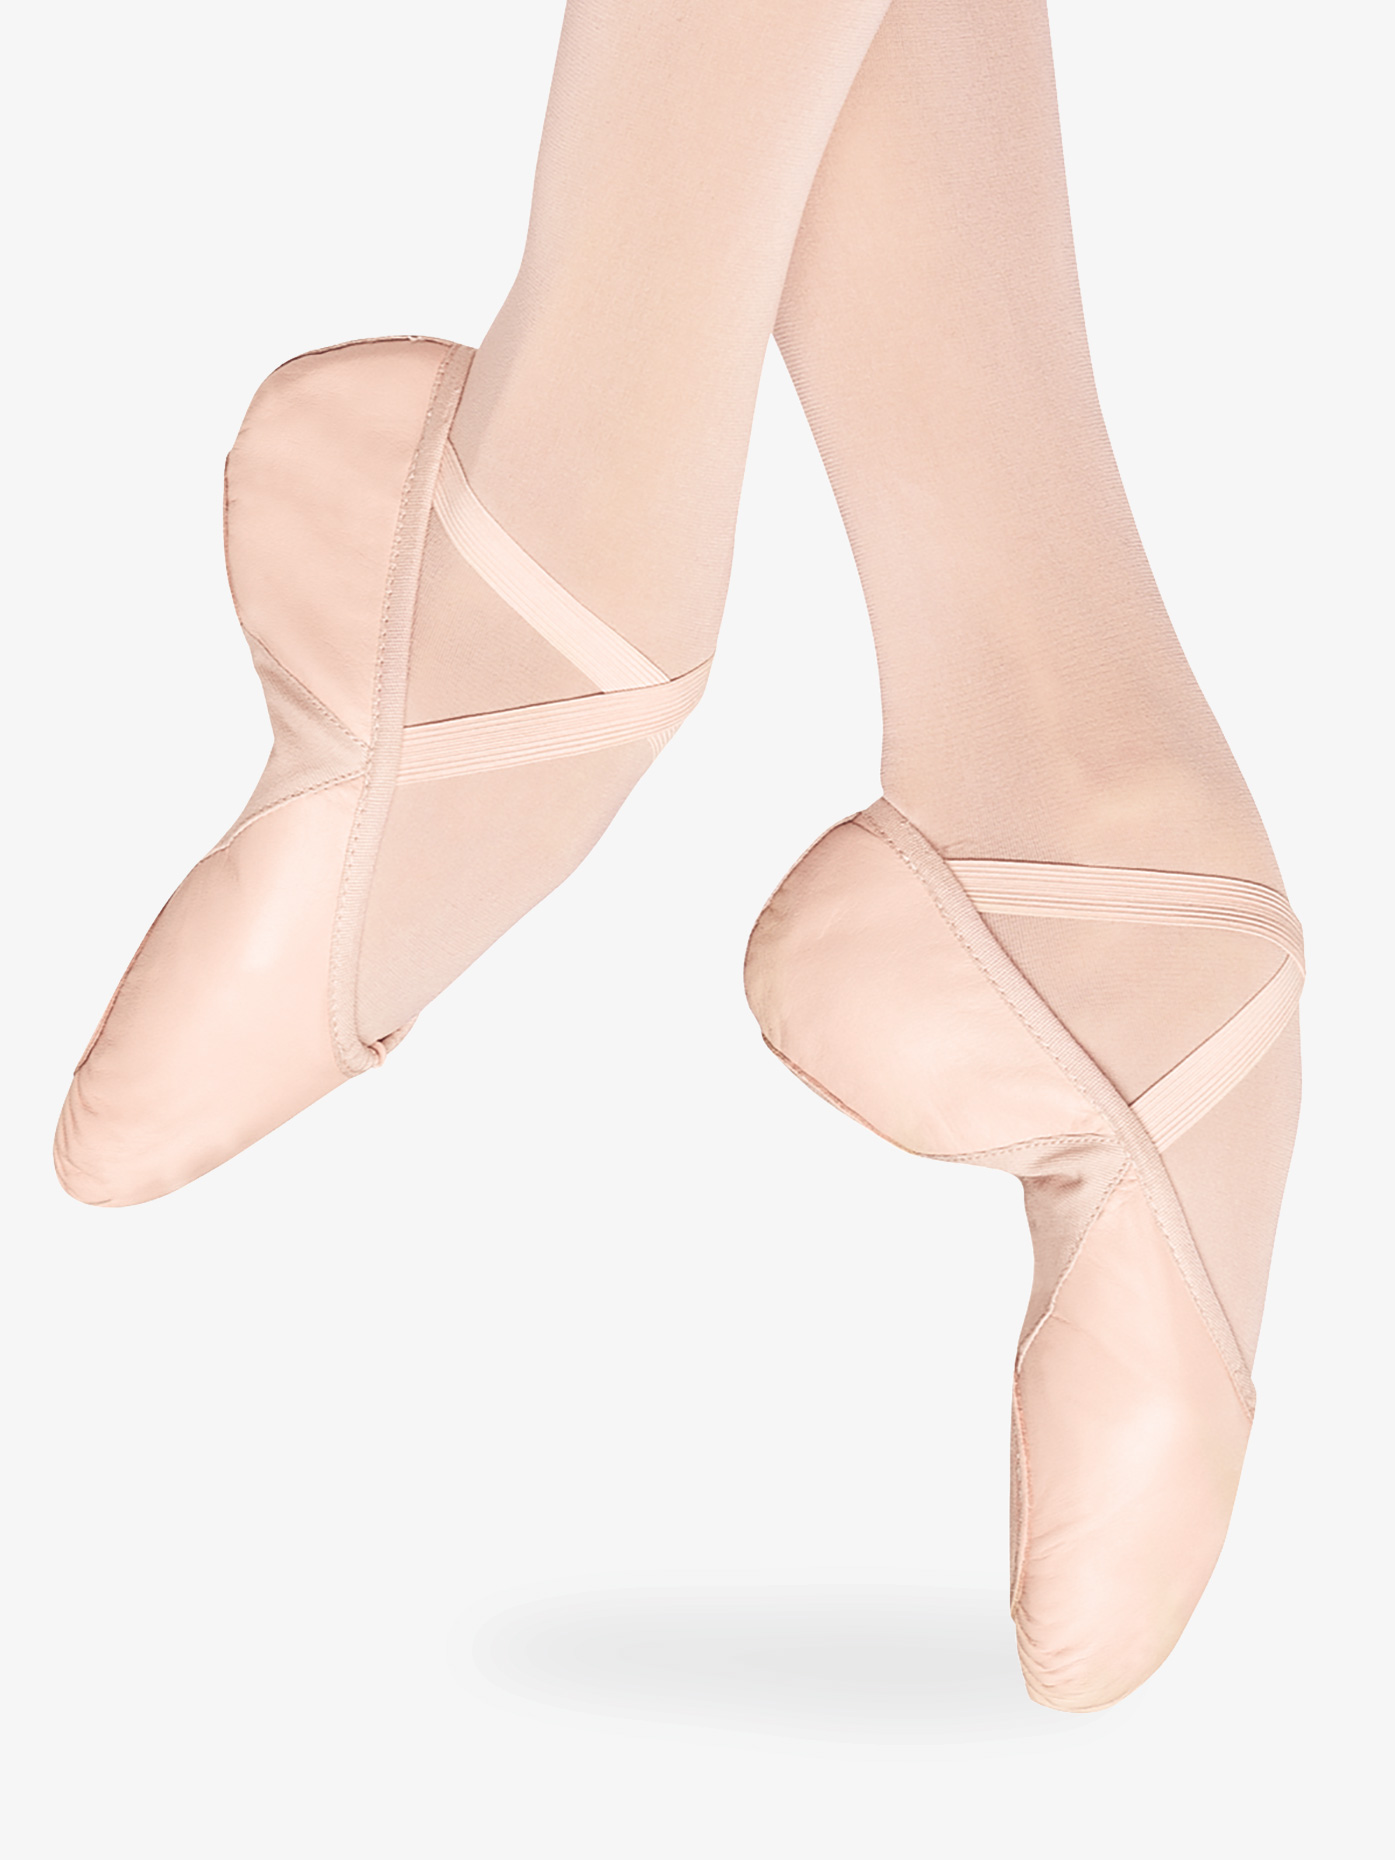 canvas Black Size 7/7.5 Men's Ballet Shoes